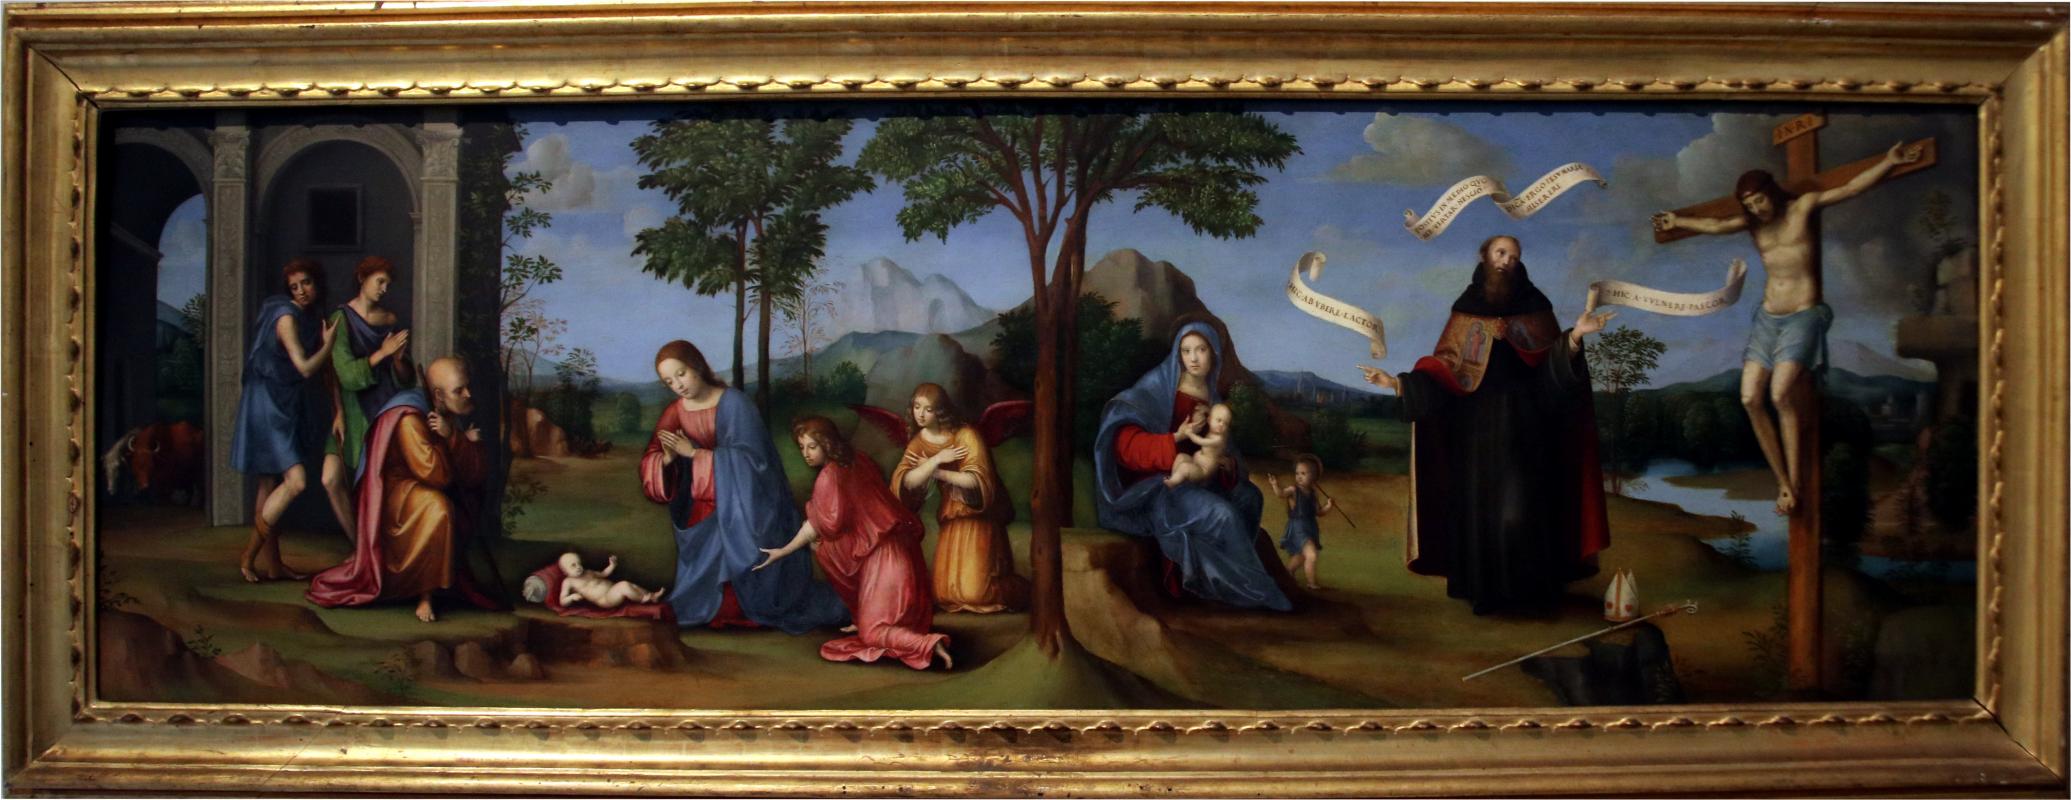 Francesco Raibolini detto il Francia, Visione di sant'Agostino, (1510 circa) 01 - Mongolo1984